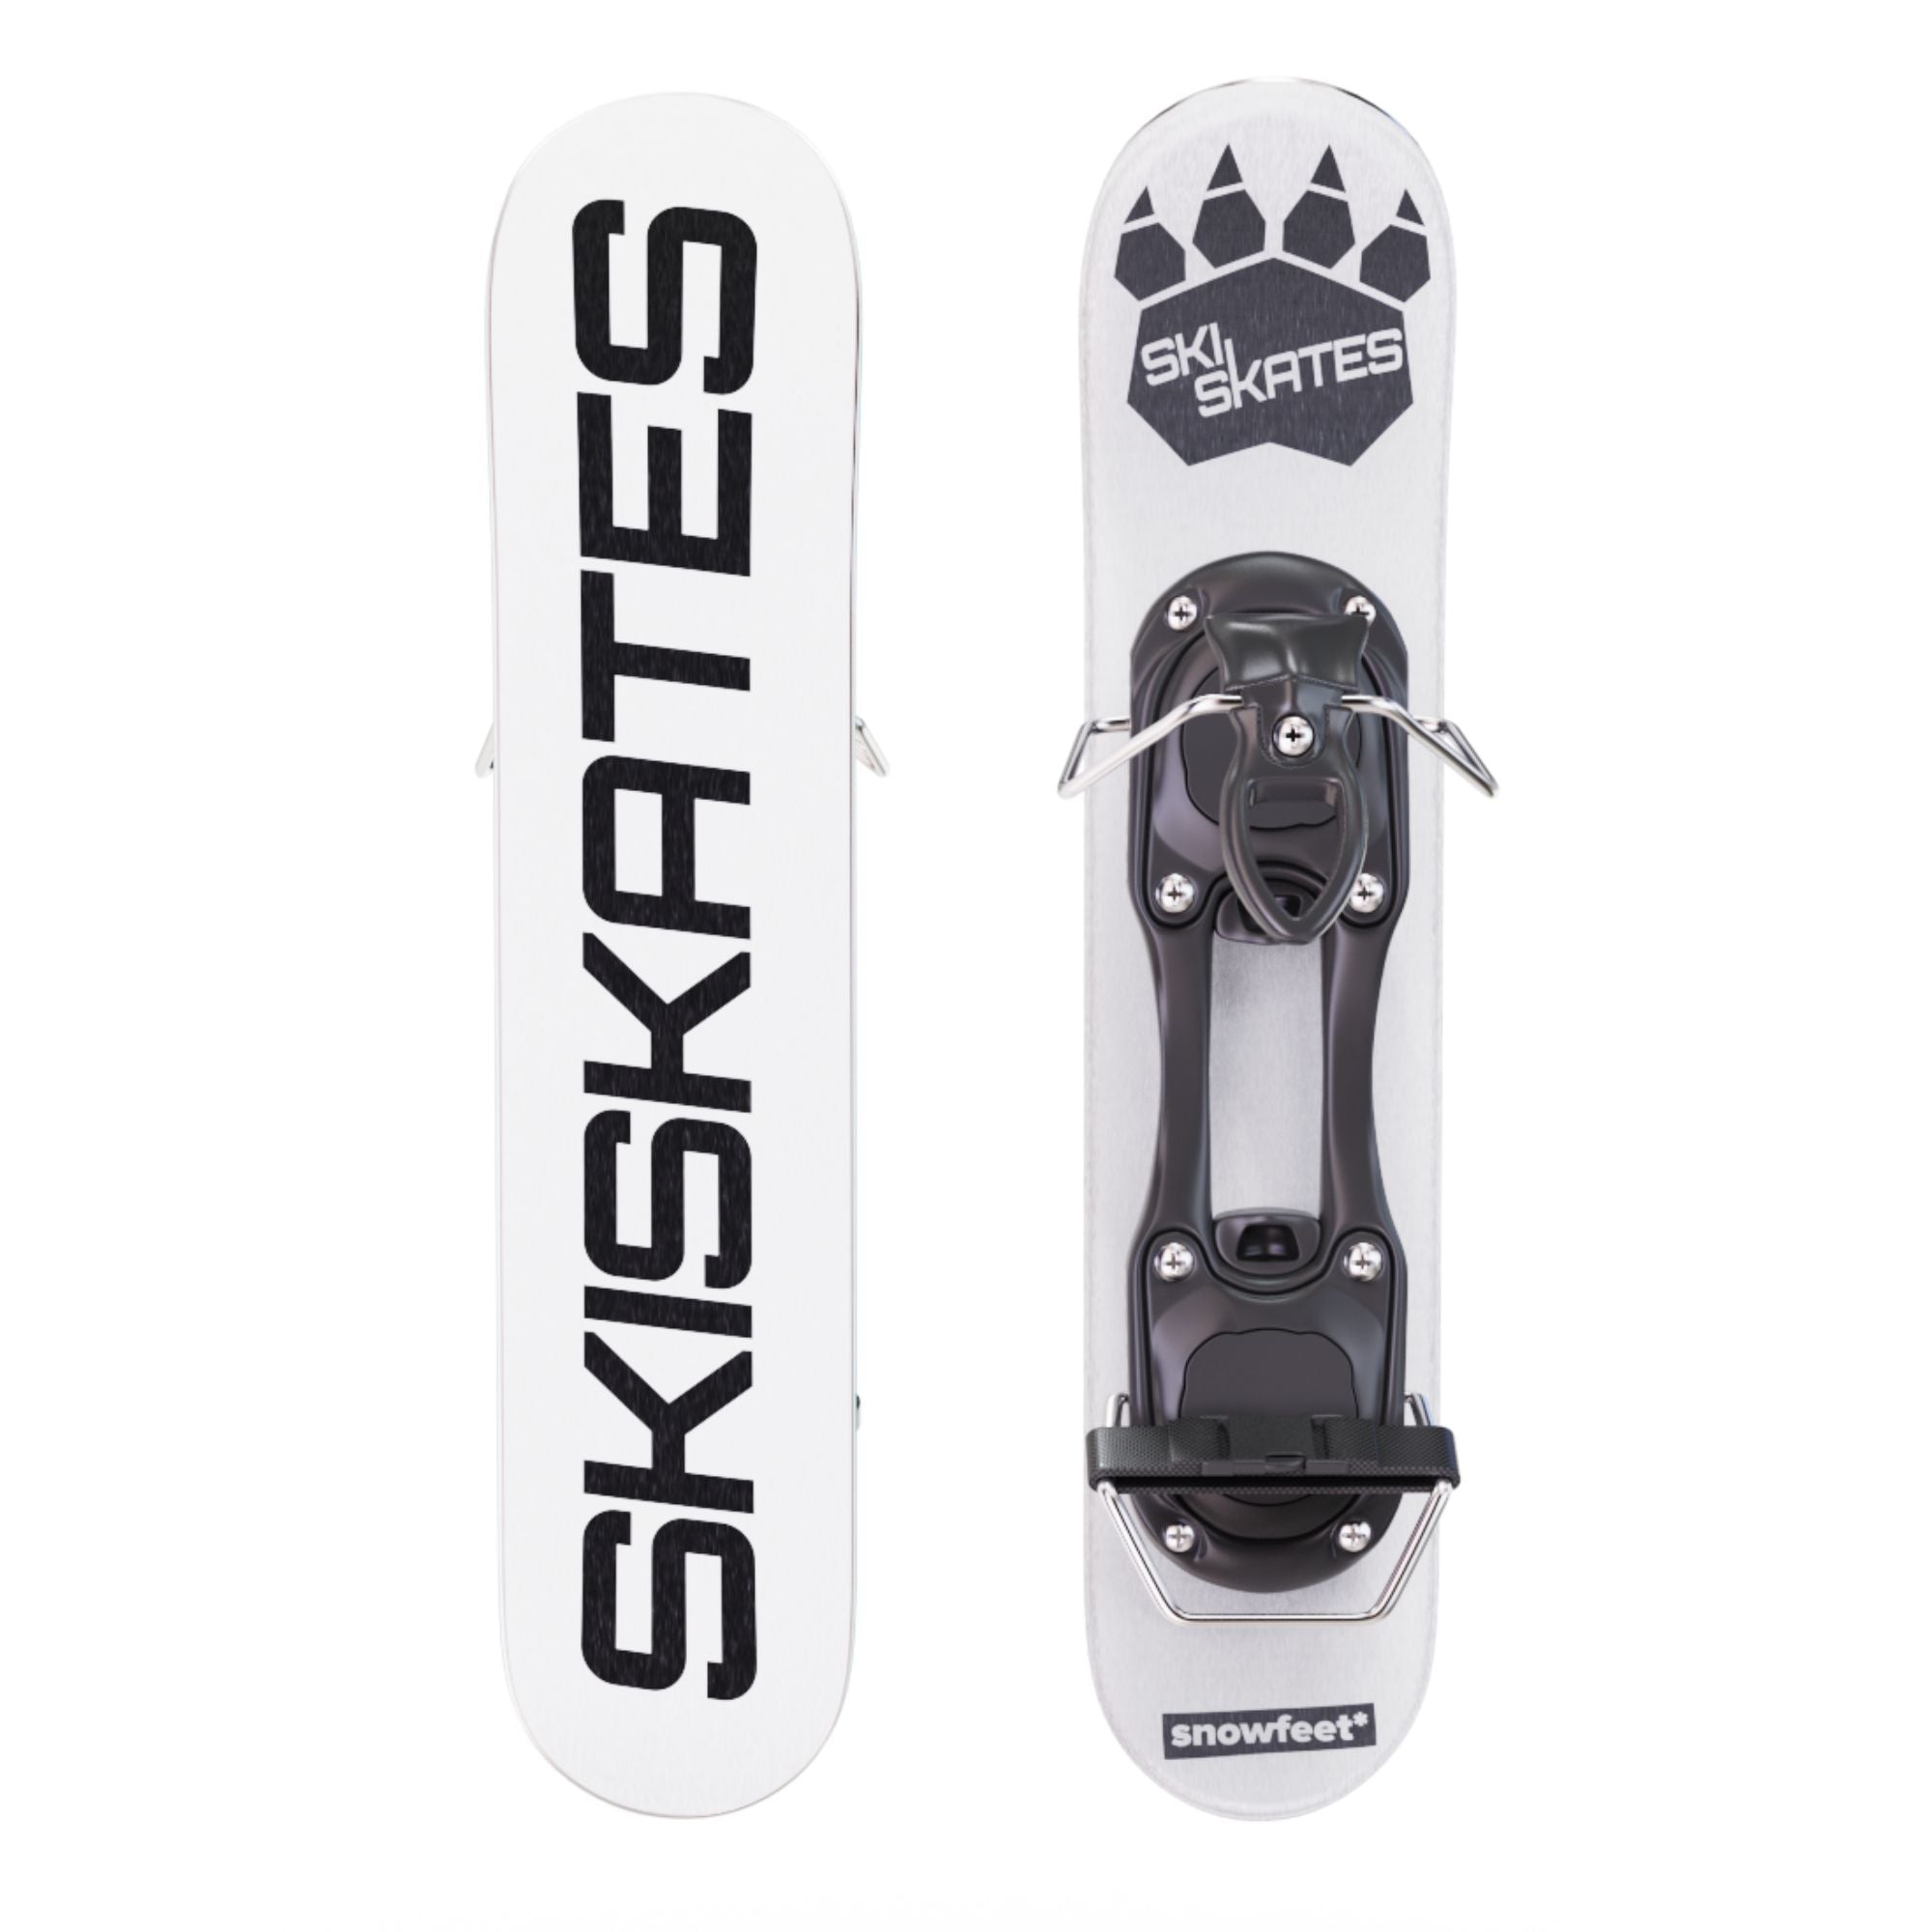 ありがとうございますSkiskates(スキースケート)スノボーブーツ用 ...